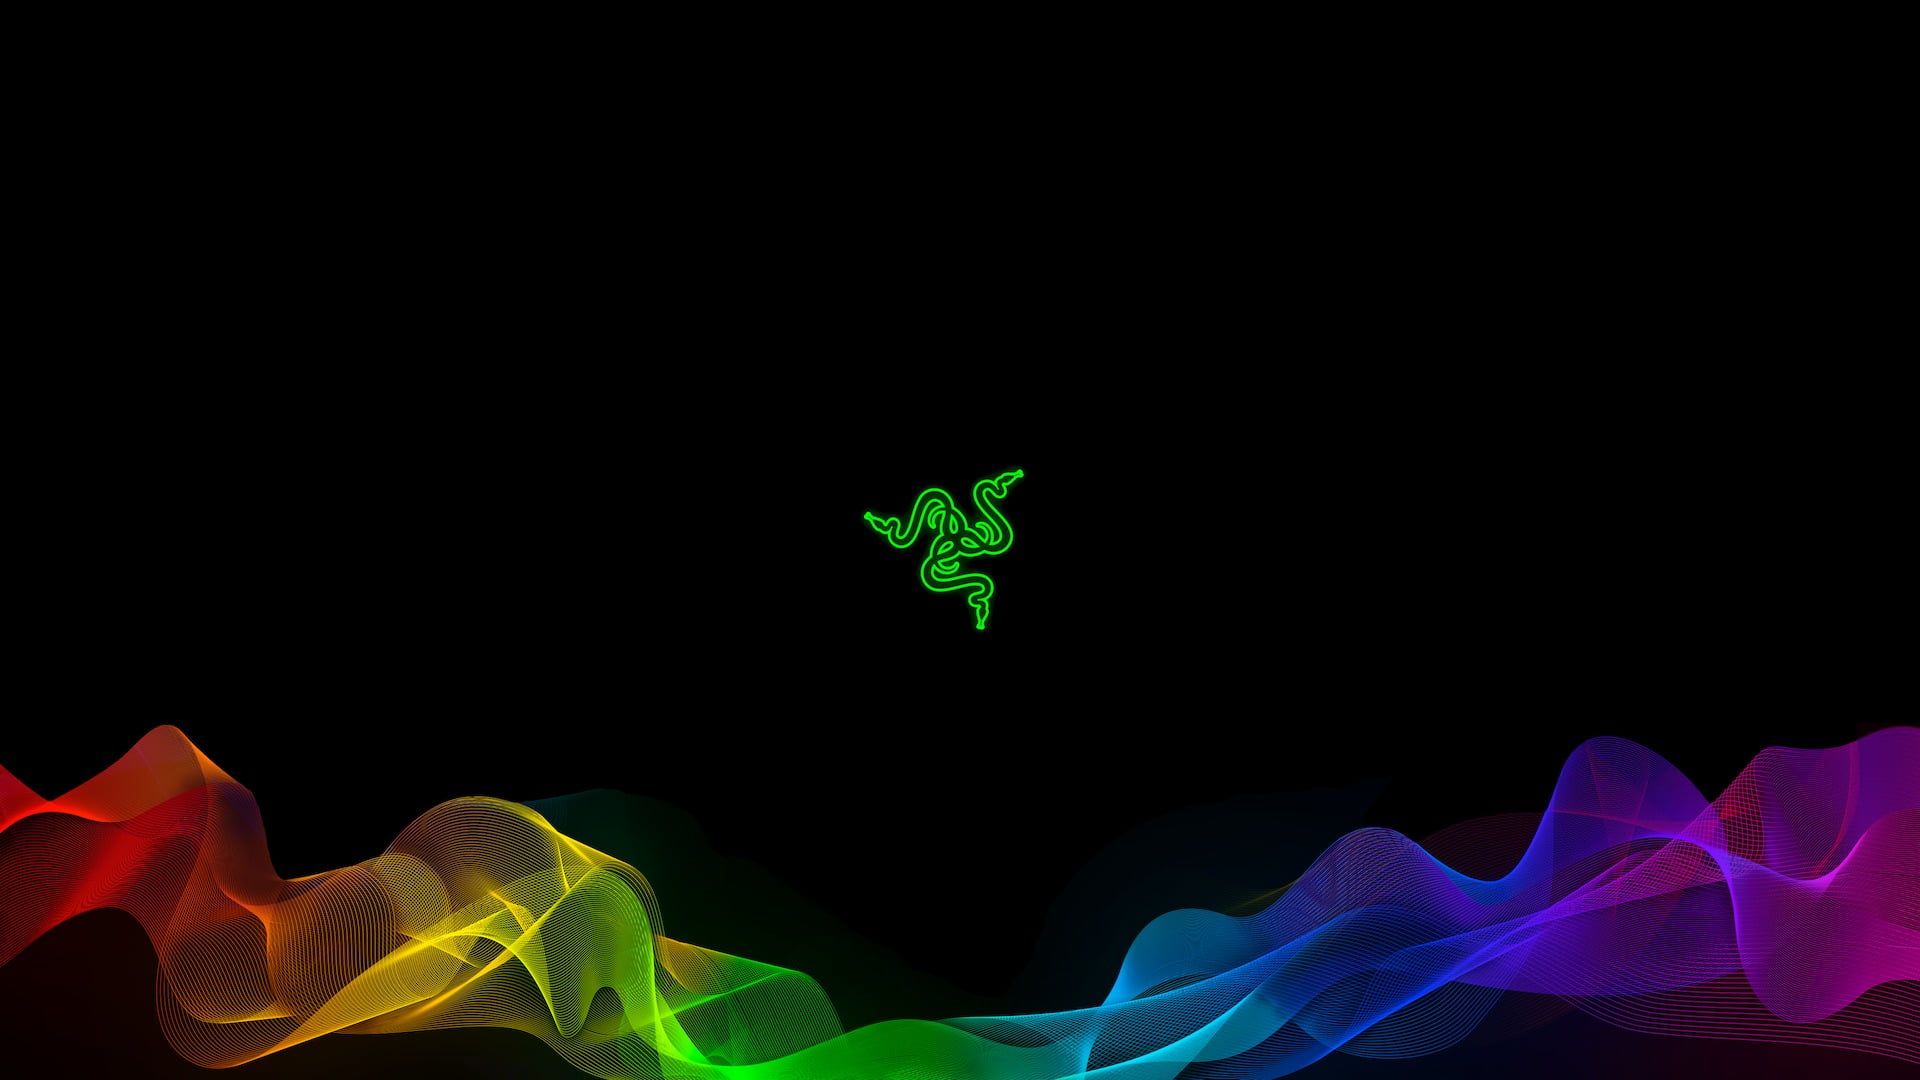 Razer logo #Razer Razer Inc. #brand #logo #logotype #colorful P # wallpaper #hdwallpaper. Computer wallpaper desktop wallpaper, Razer, Apple logo wallpaper